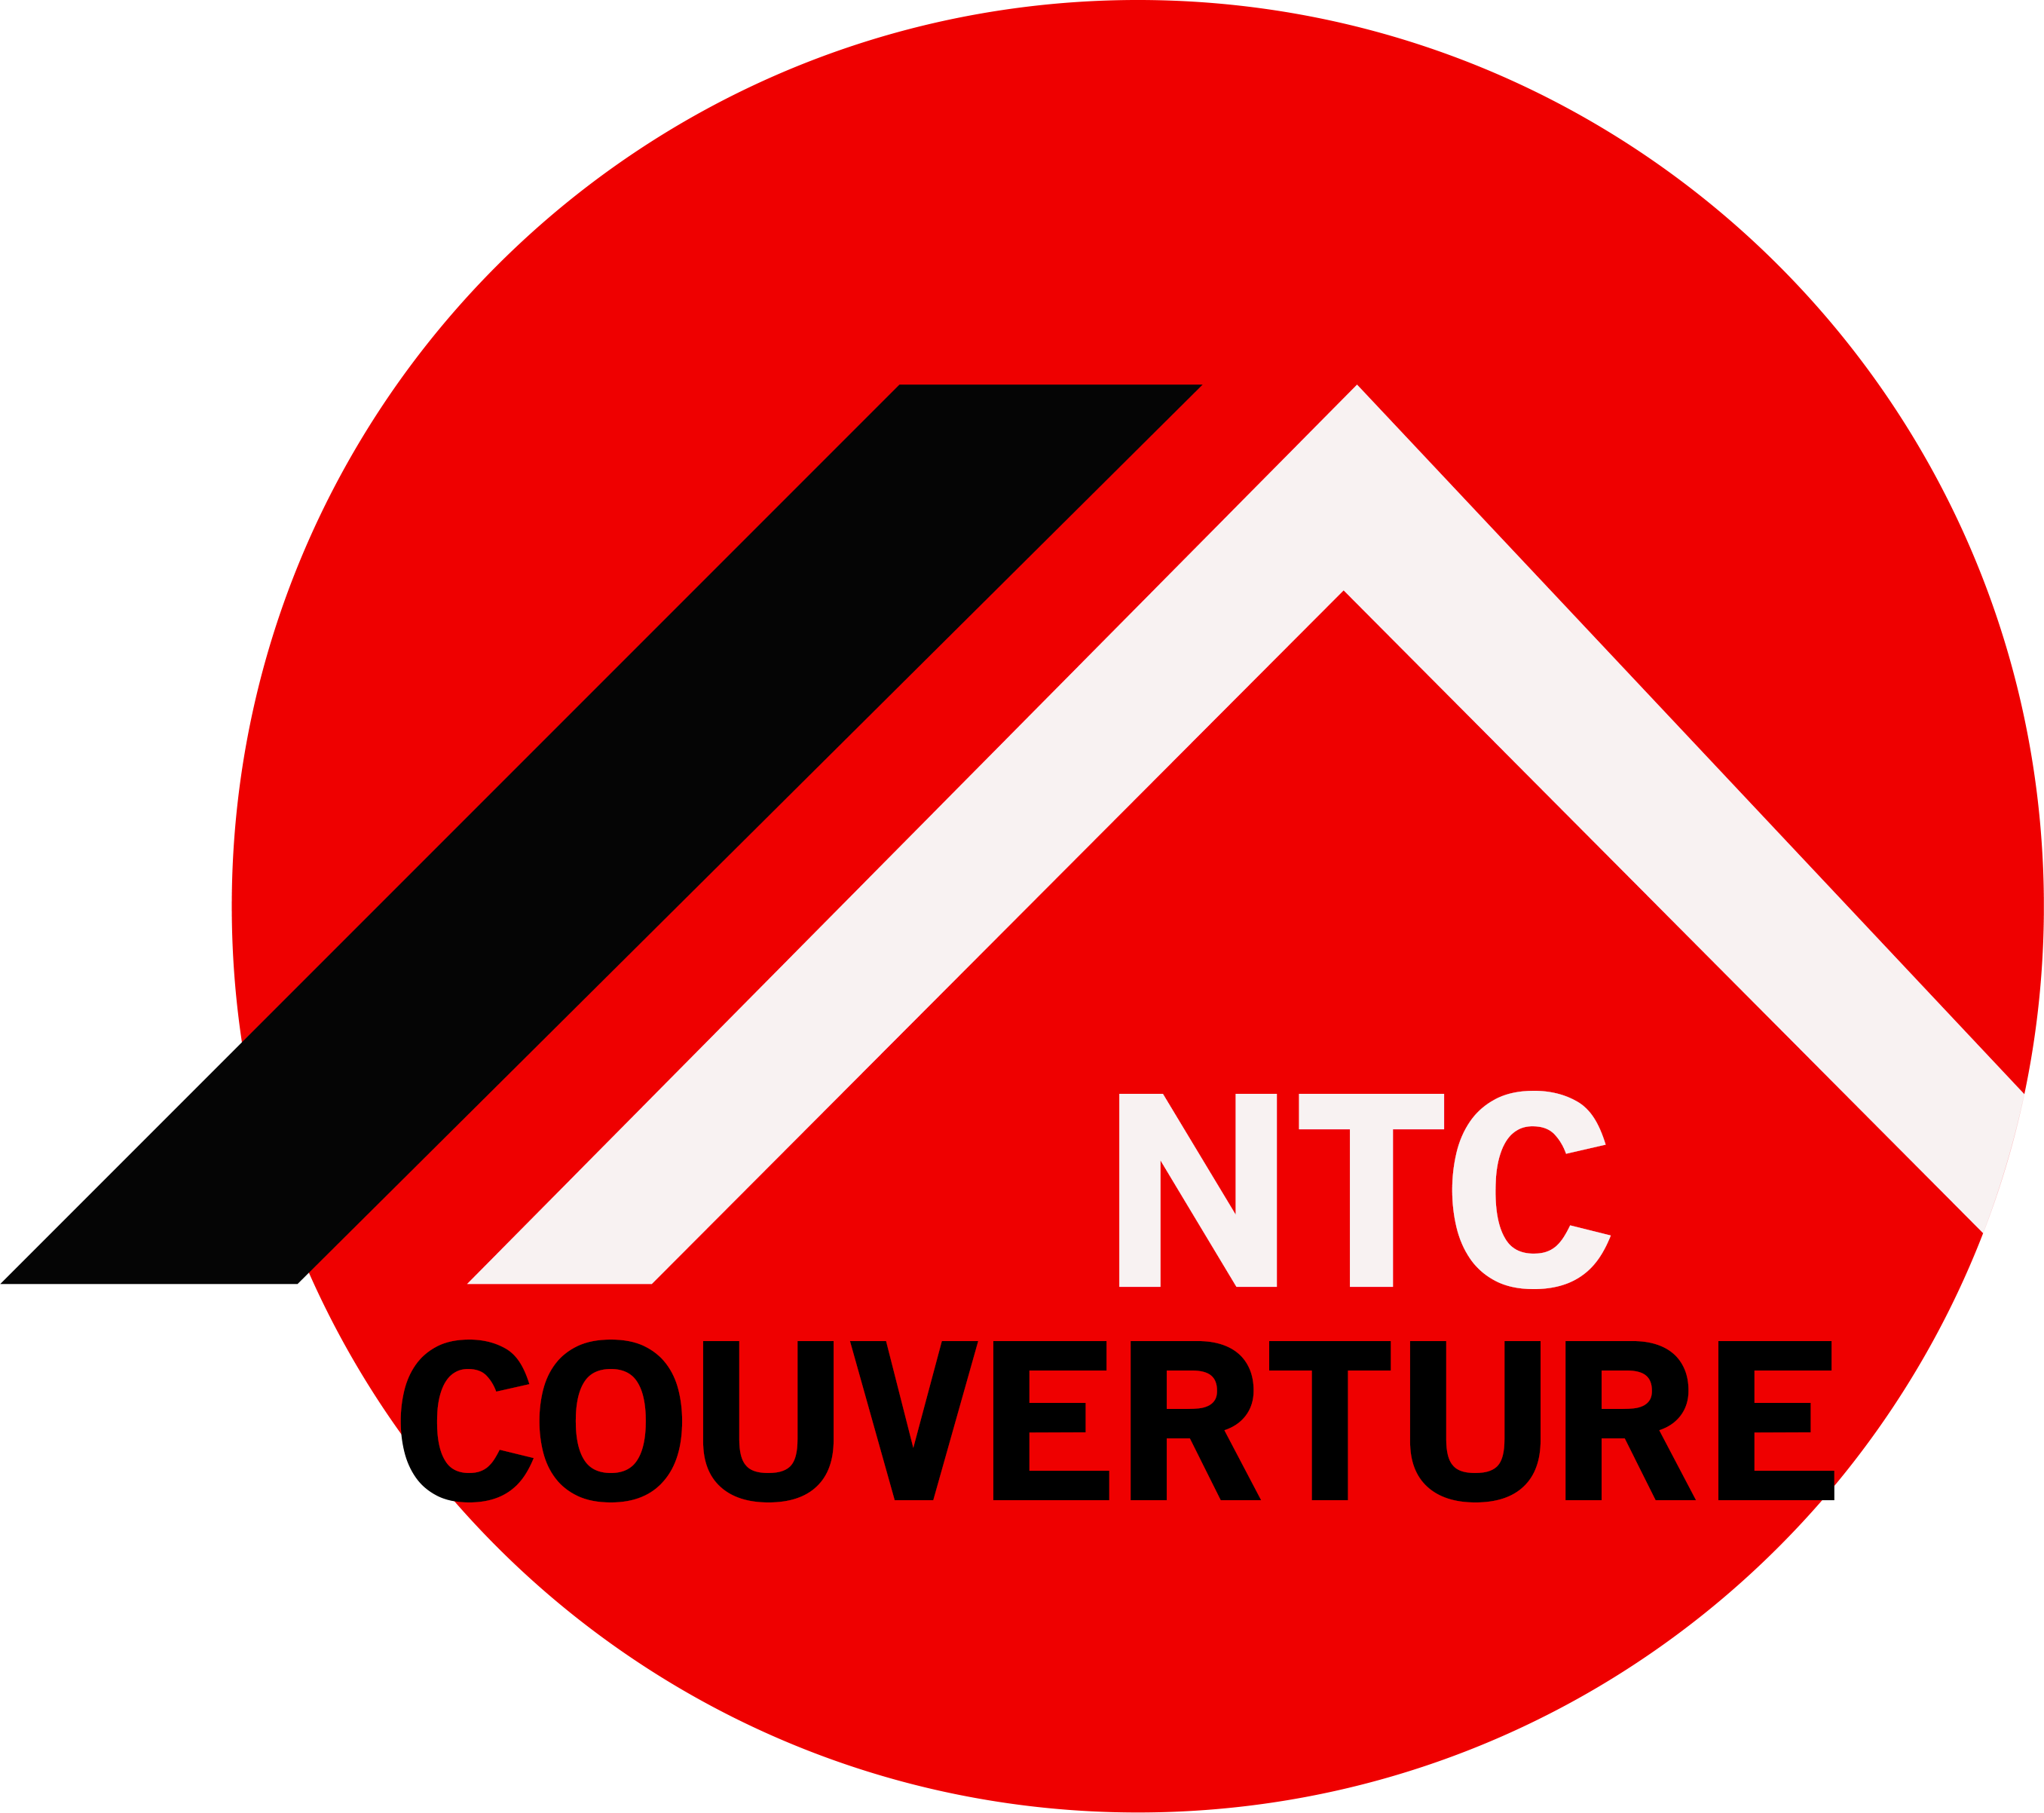 NTC Couverture à Bondy,  NTC Couverture en Seine-Saint-Denis et en Ile de France